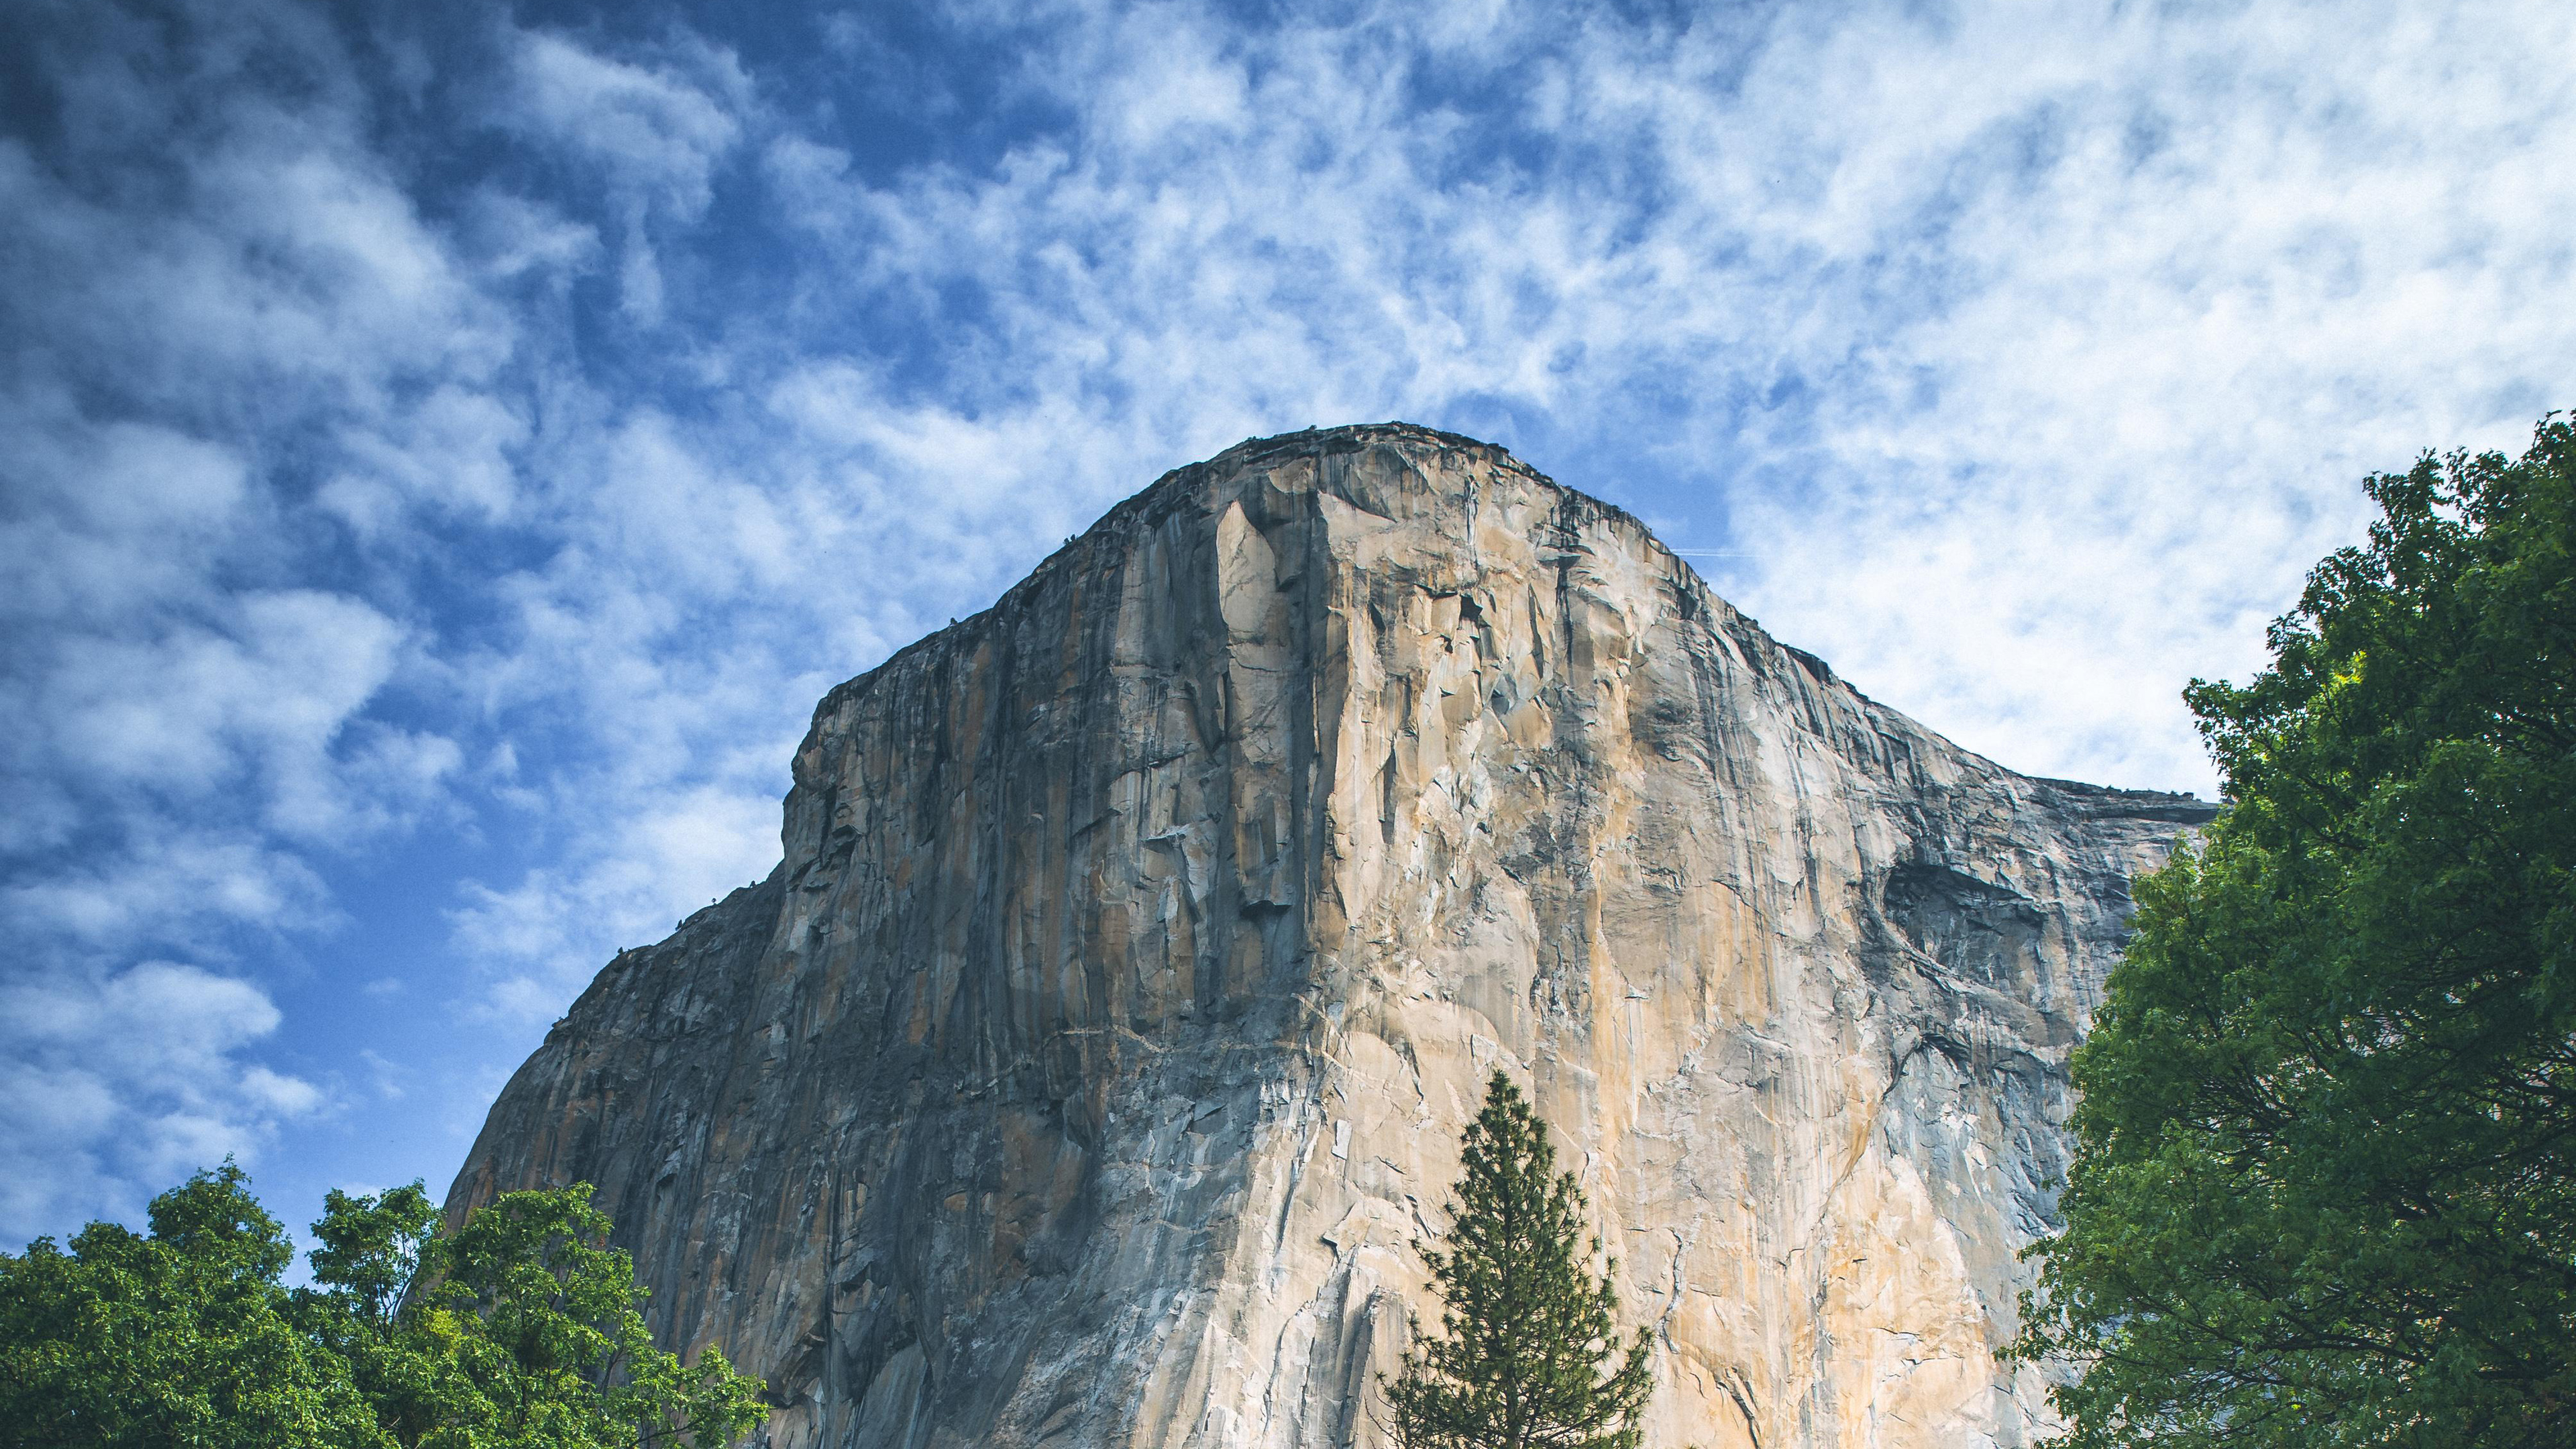 Yosemite 4k - Yosemite National Park, El Capitan - HD Wallpaper 